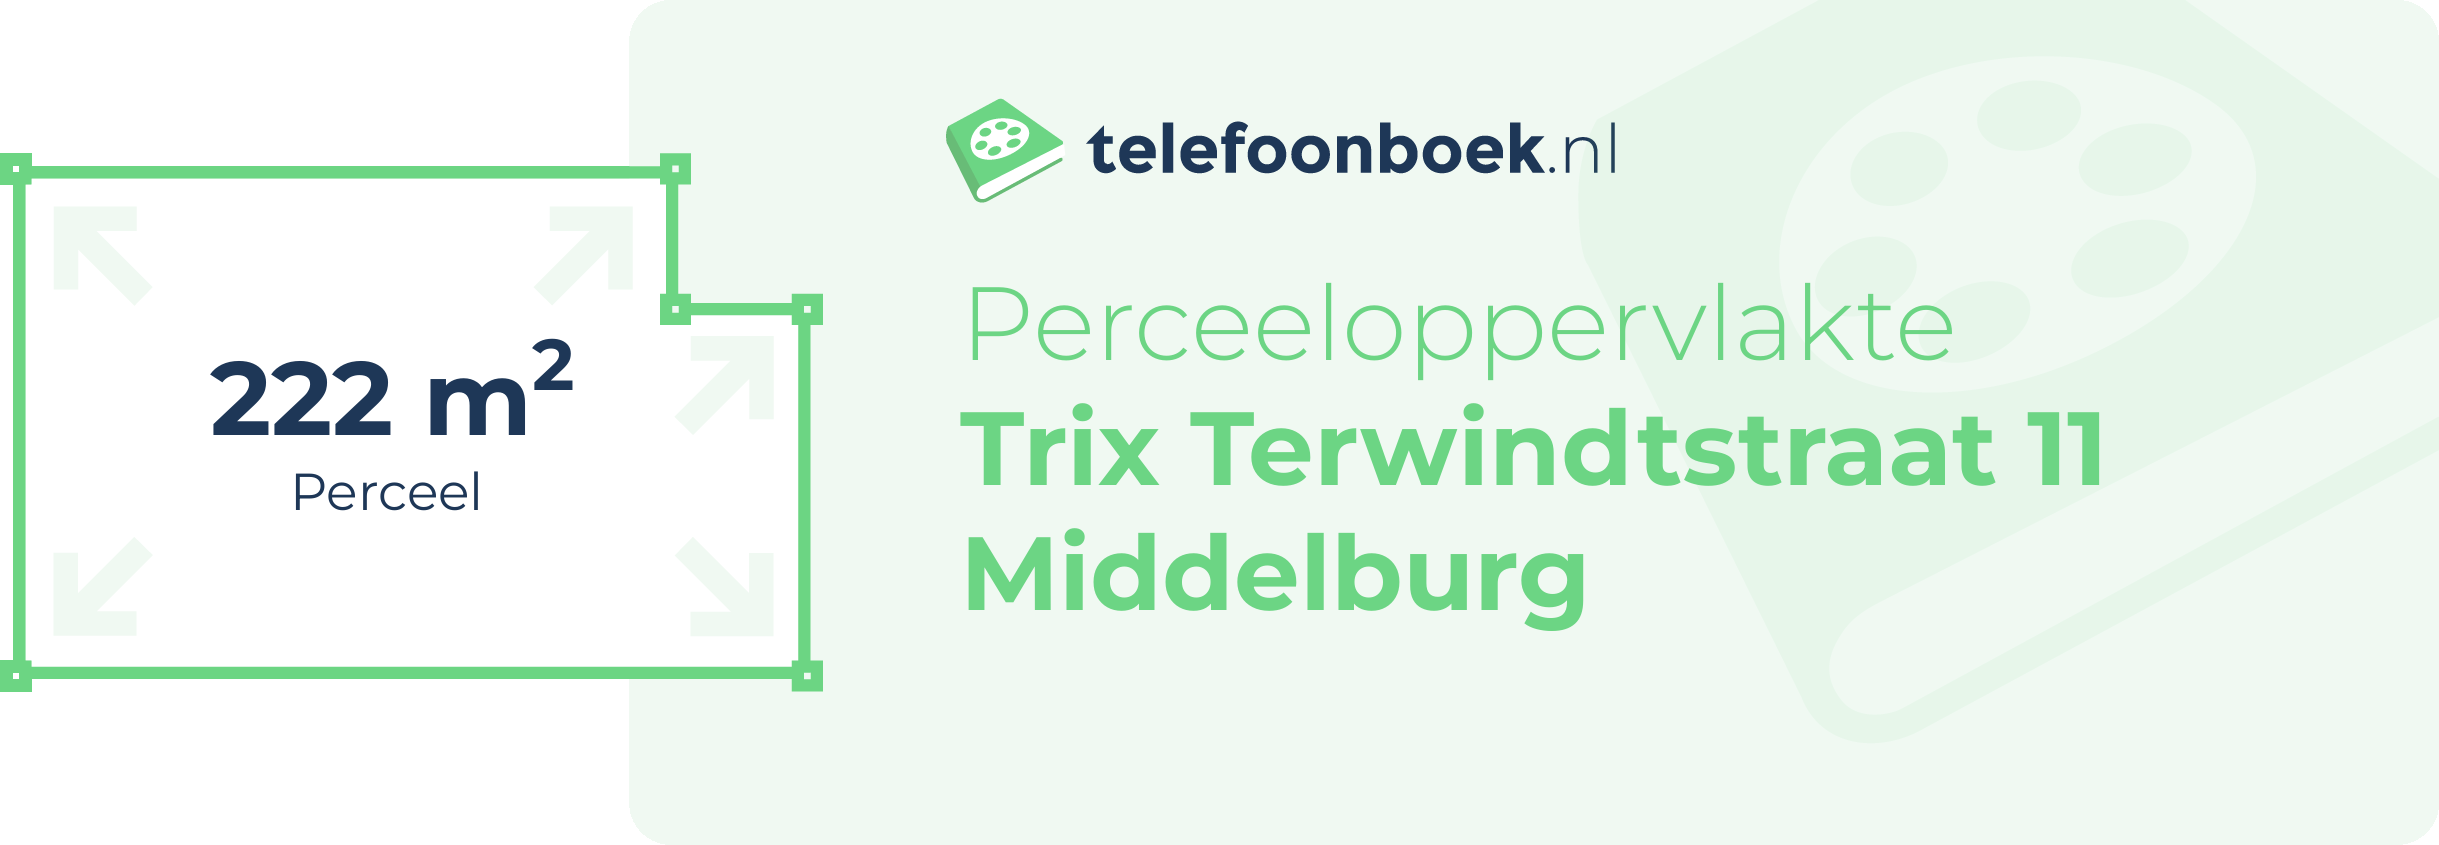 Perceeloppervlakte Trix Terwindtstraat 11 Middelburg